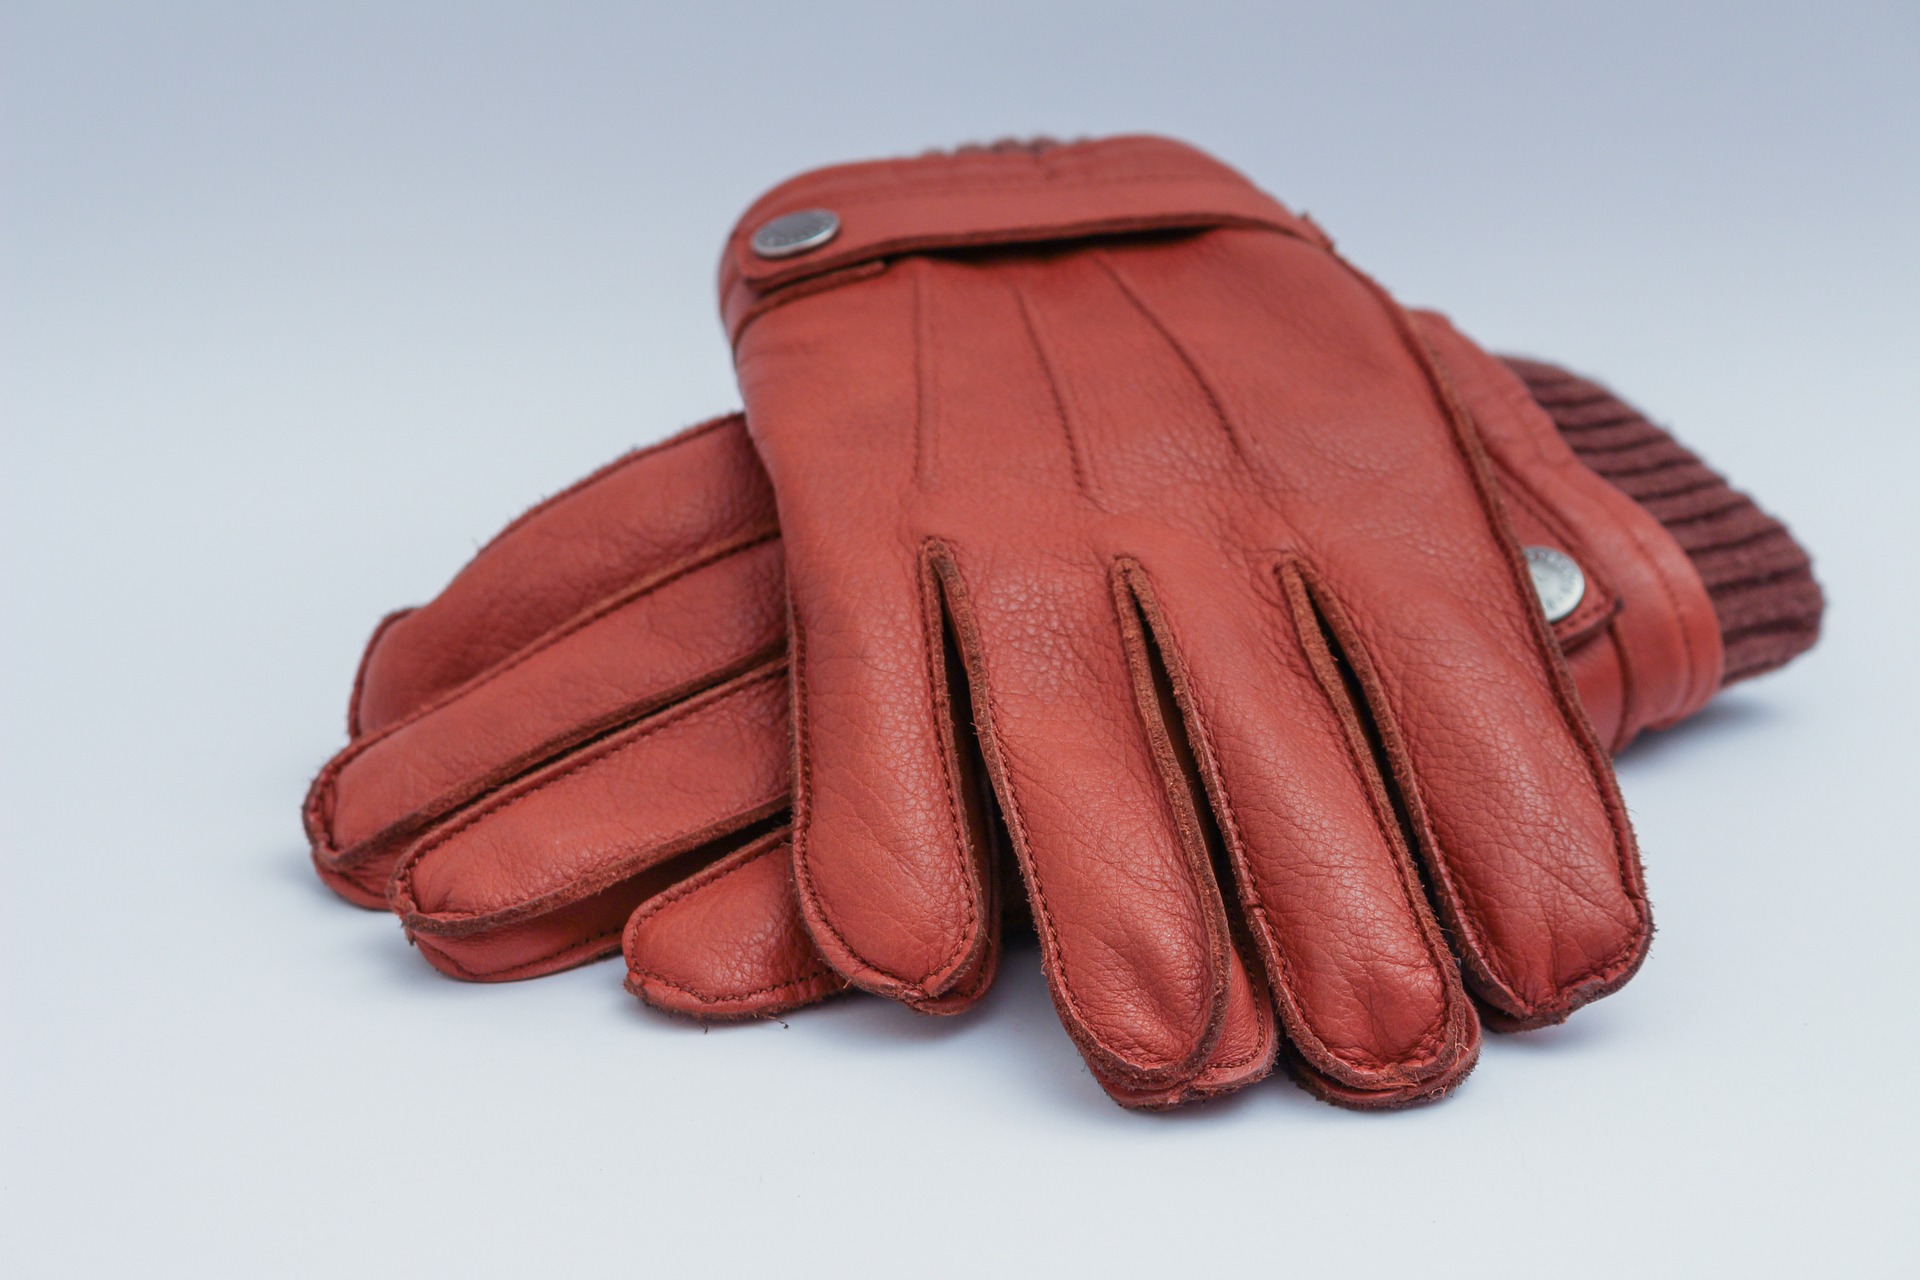 mens-leather-gloves-1194450_1920.jpg